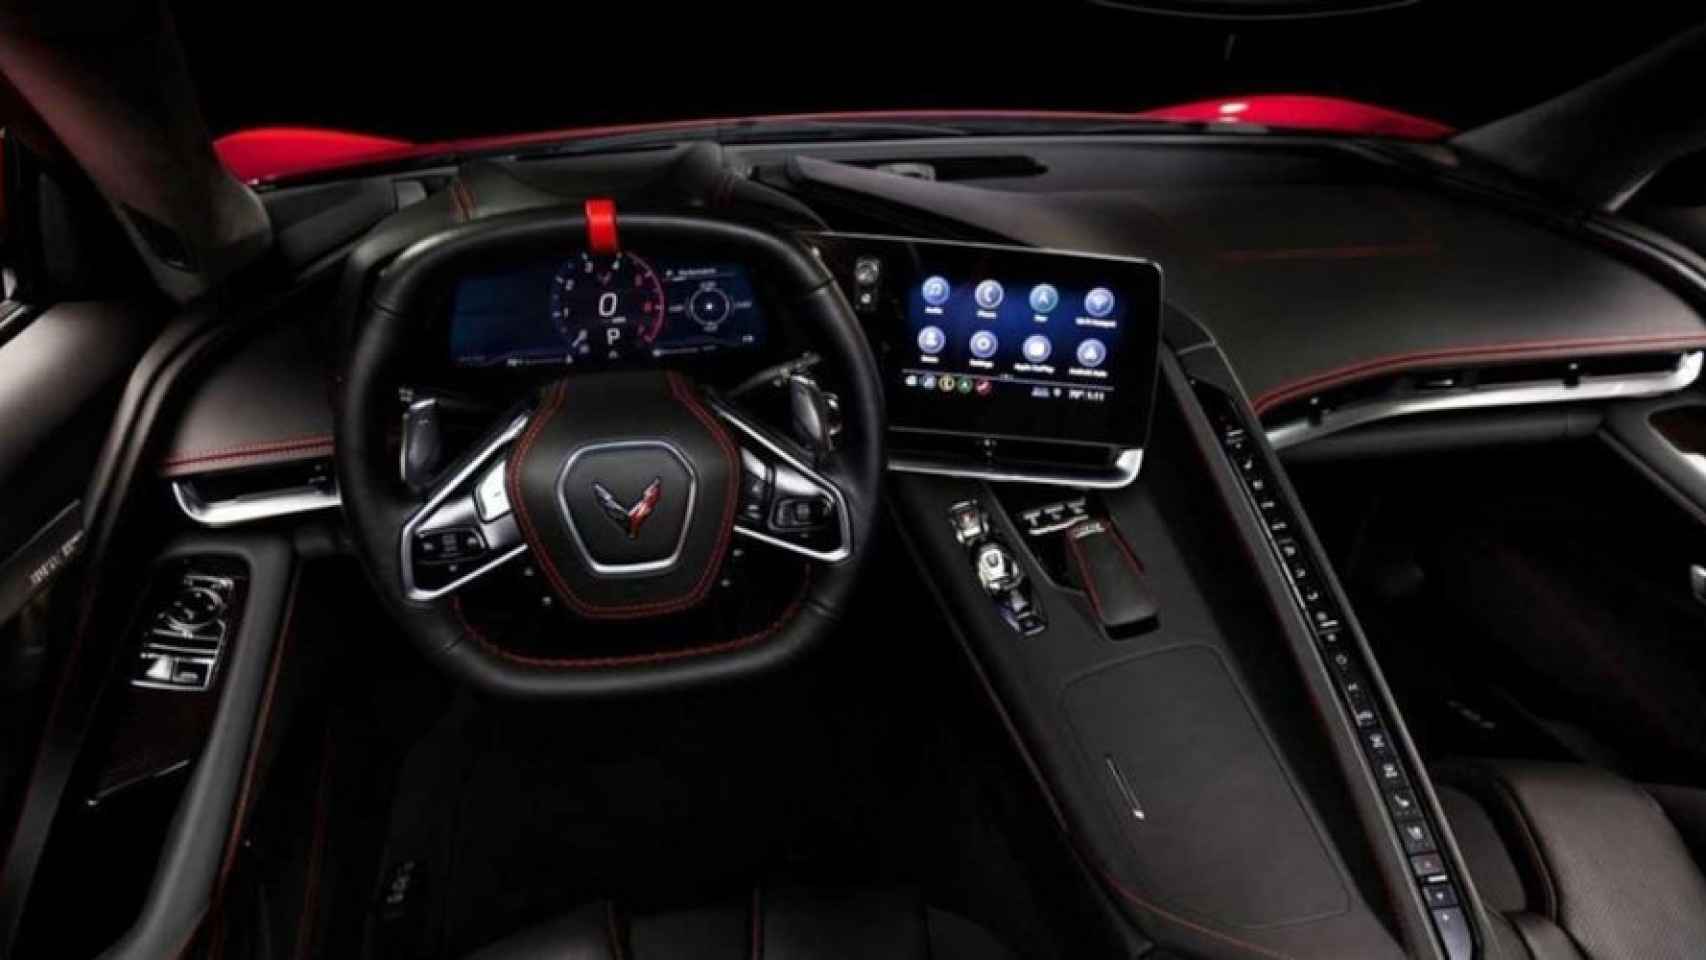 Chevrolet usará su propio sistema en coches como los Corvette